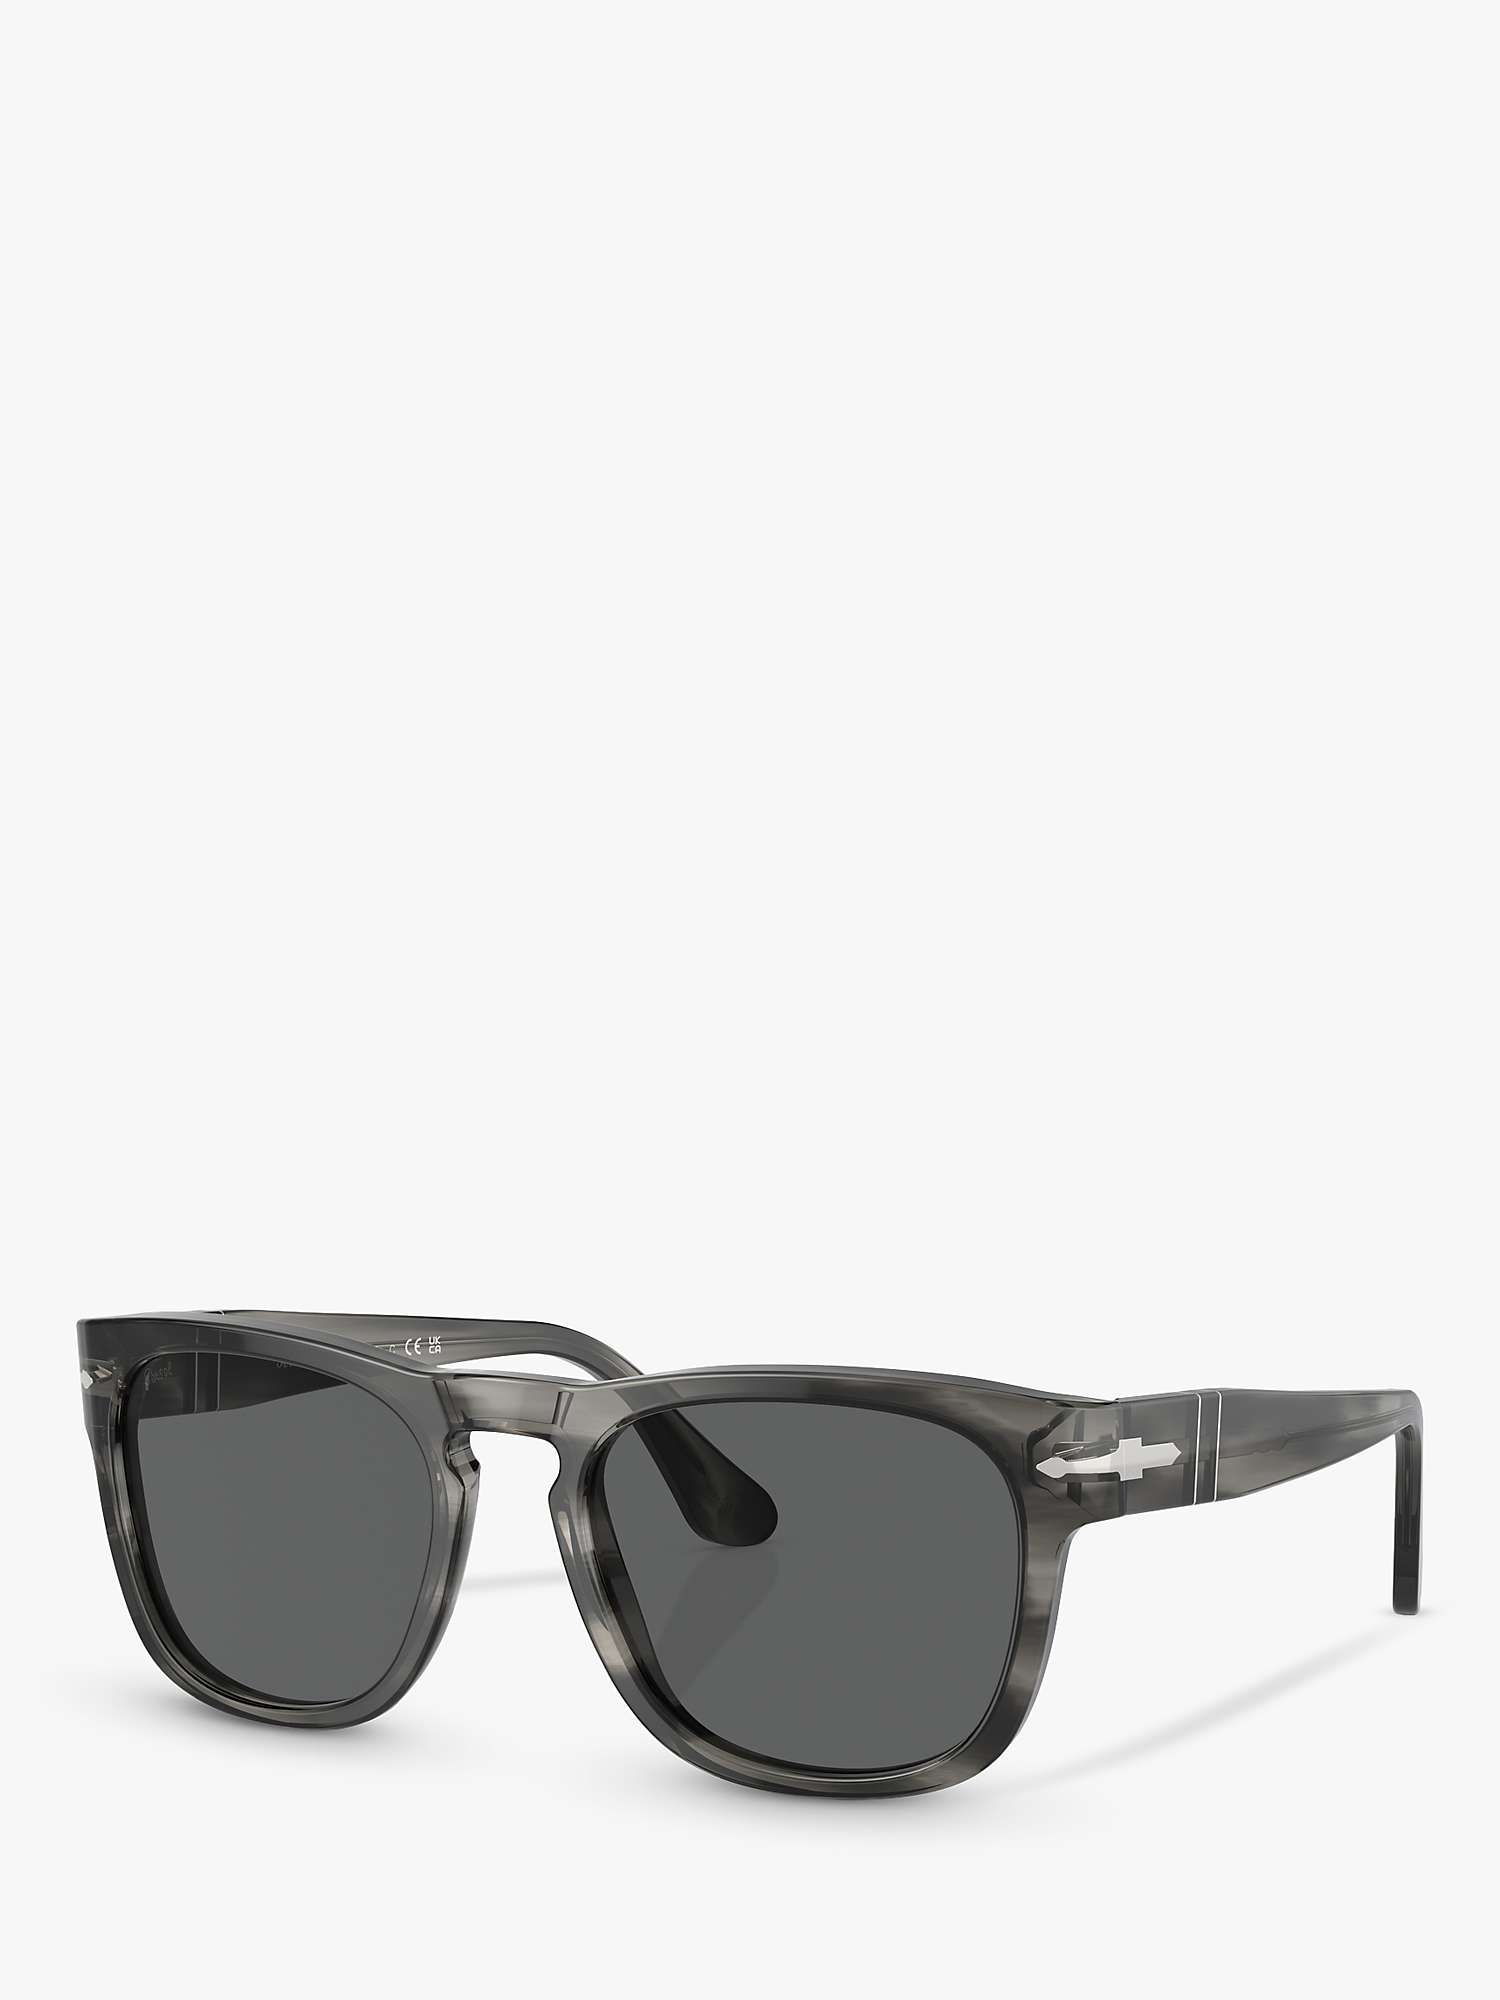 Buy Persol PO3333S Unisex Elio Square Sunglasses Online at johnlewis.com